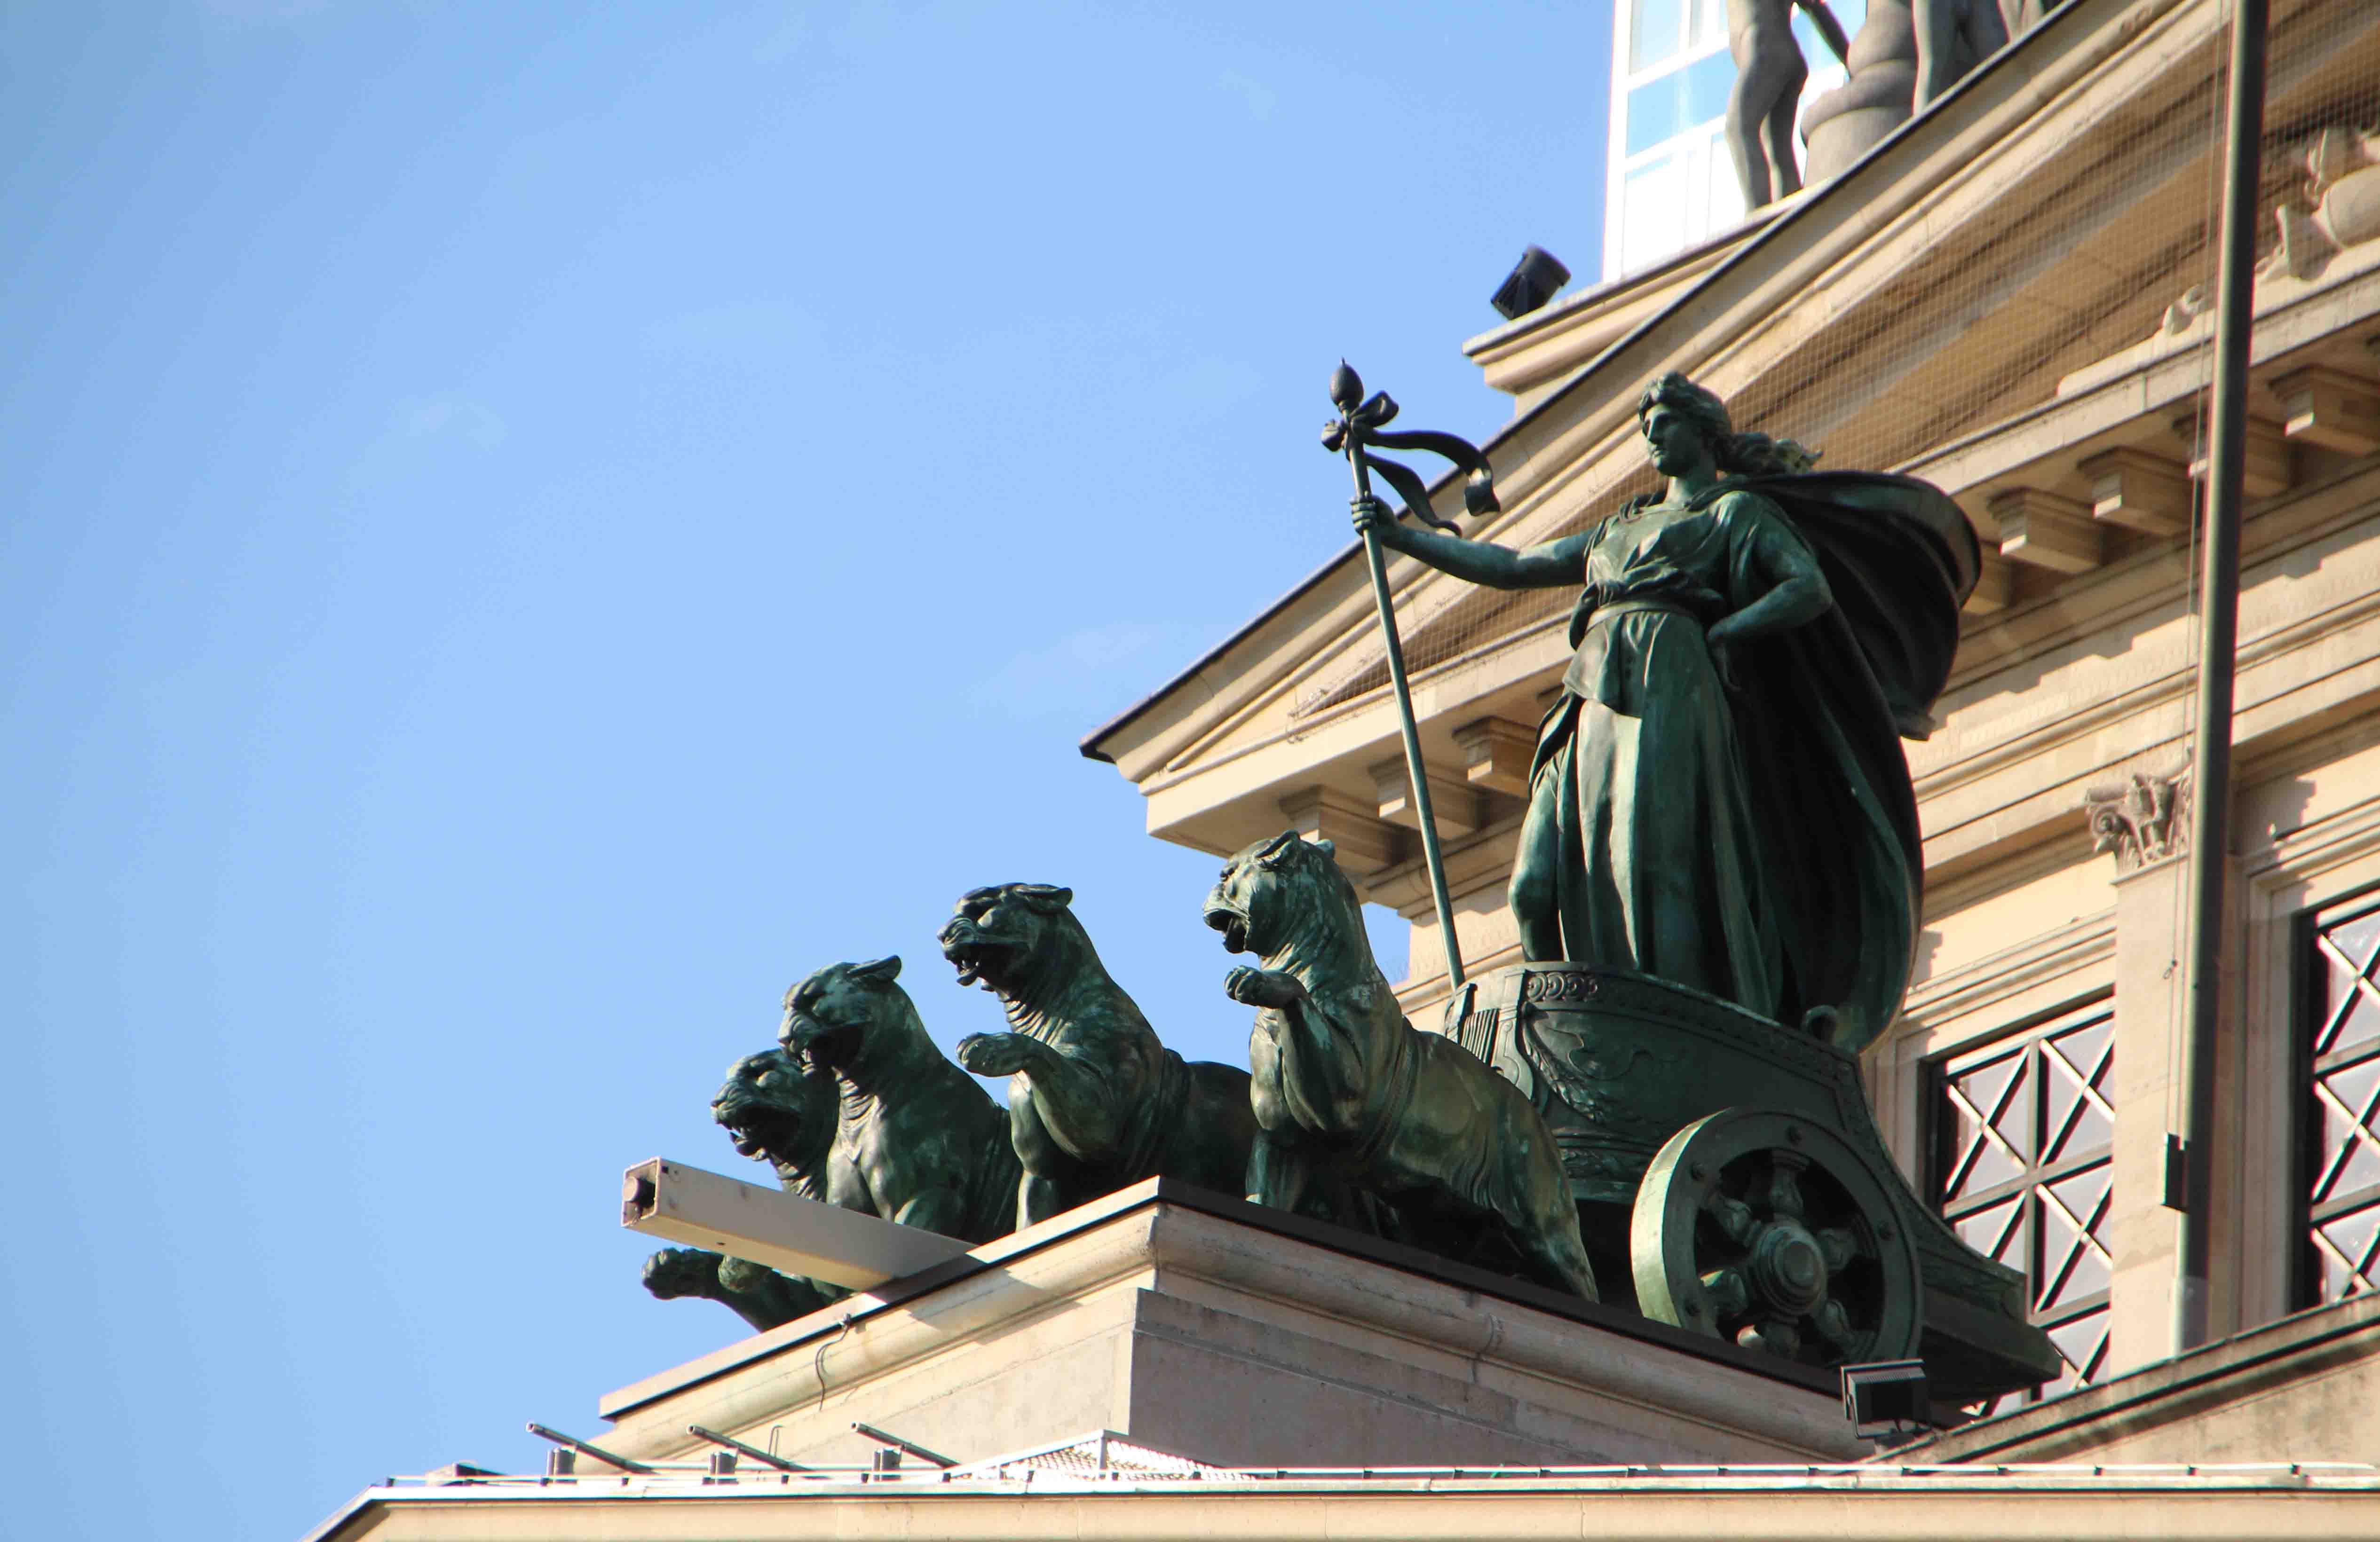 Die Frankfurter Quadriga an der Alten Oper zeigt keine Pferde, sondern Panther im Gespann. < >